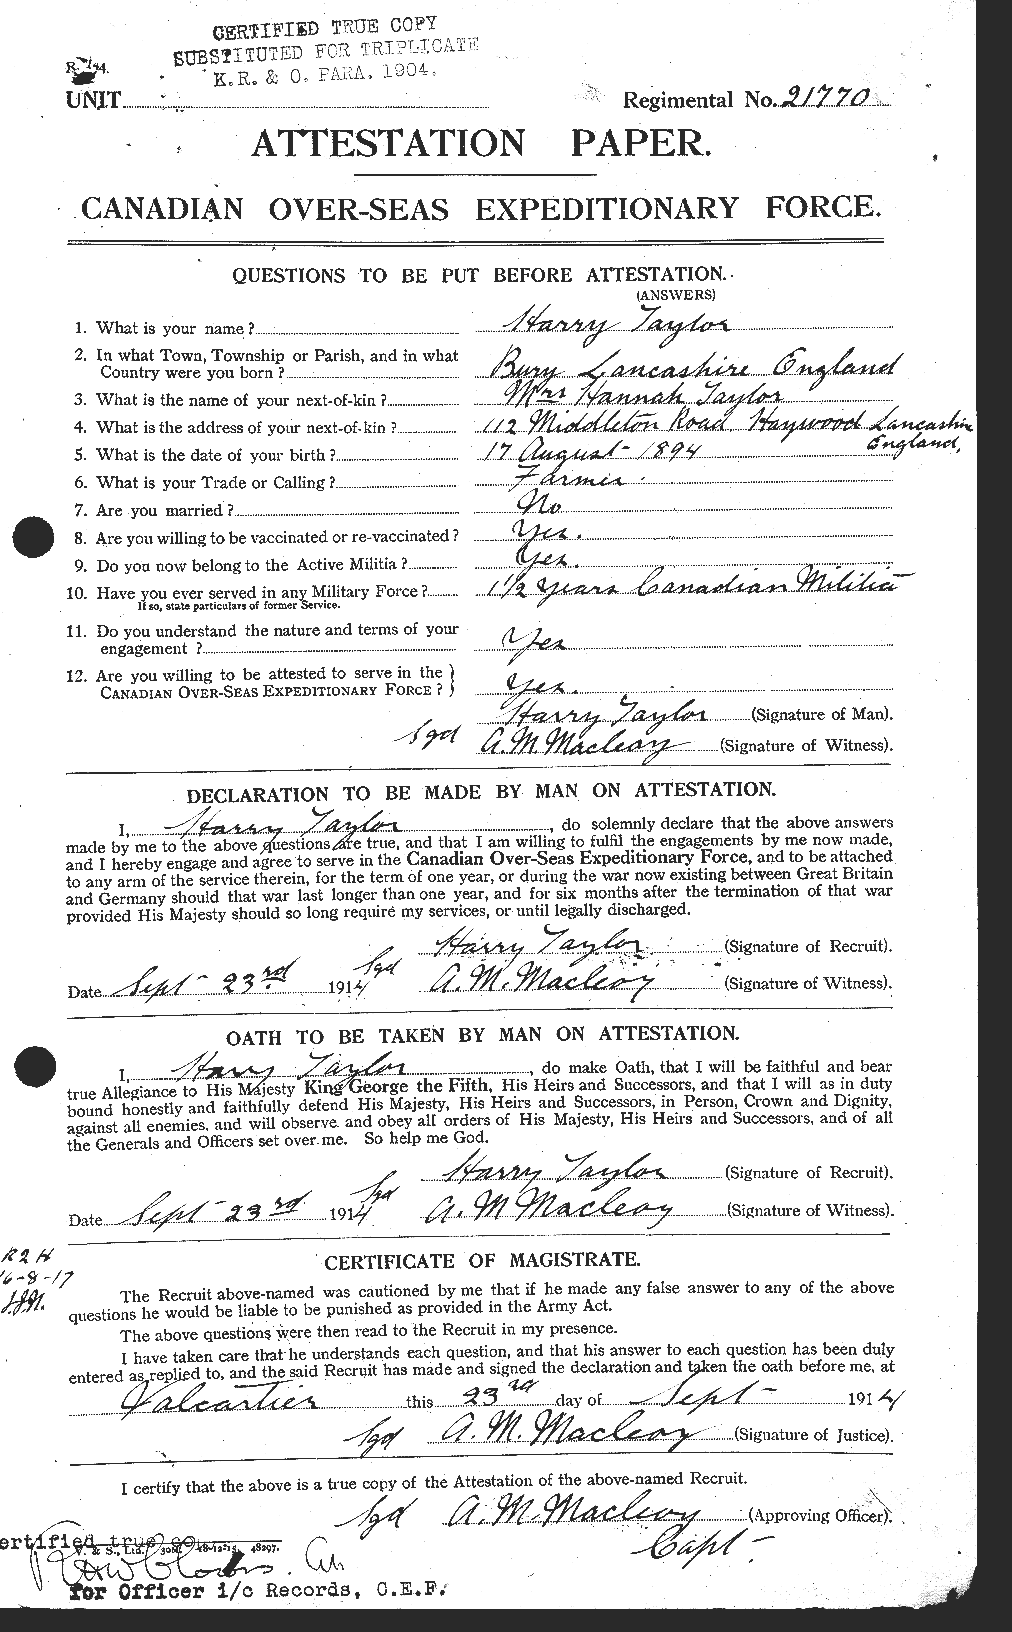 Dossiers du Personnel de la Première Guerre mondiale - CEC 626472a